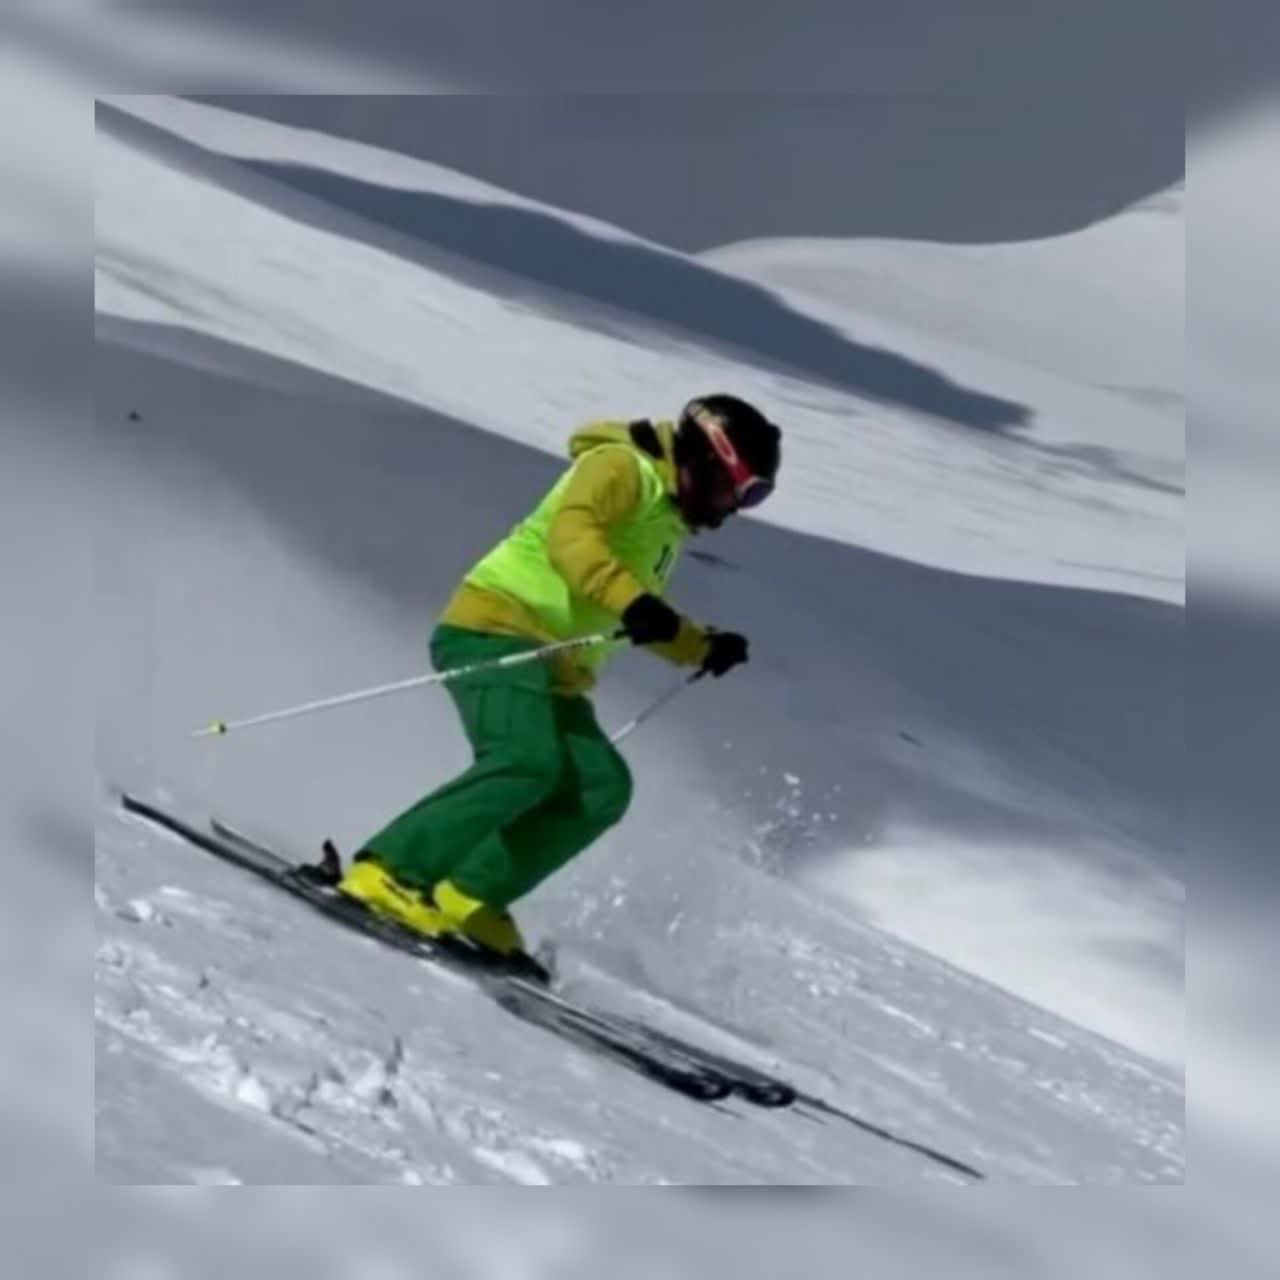 مربی اسکی آلپاین ⛷️،آموزش اسکی آلپاین-pic1